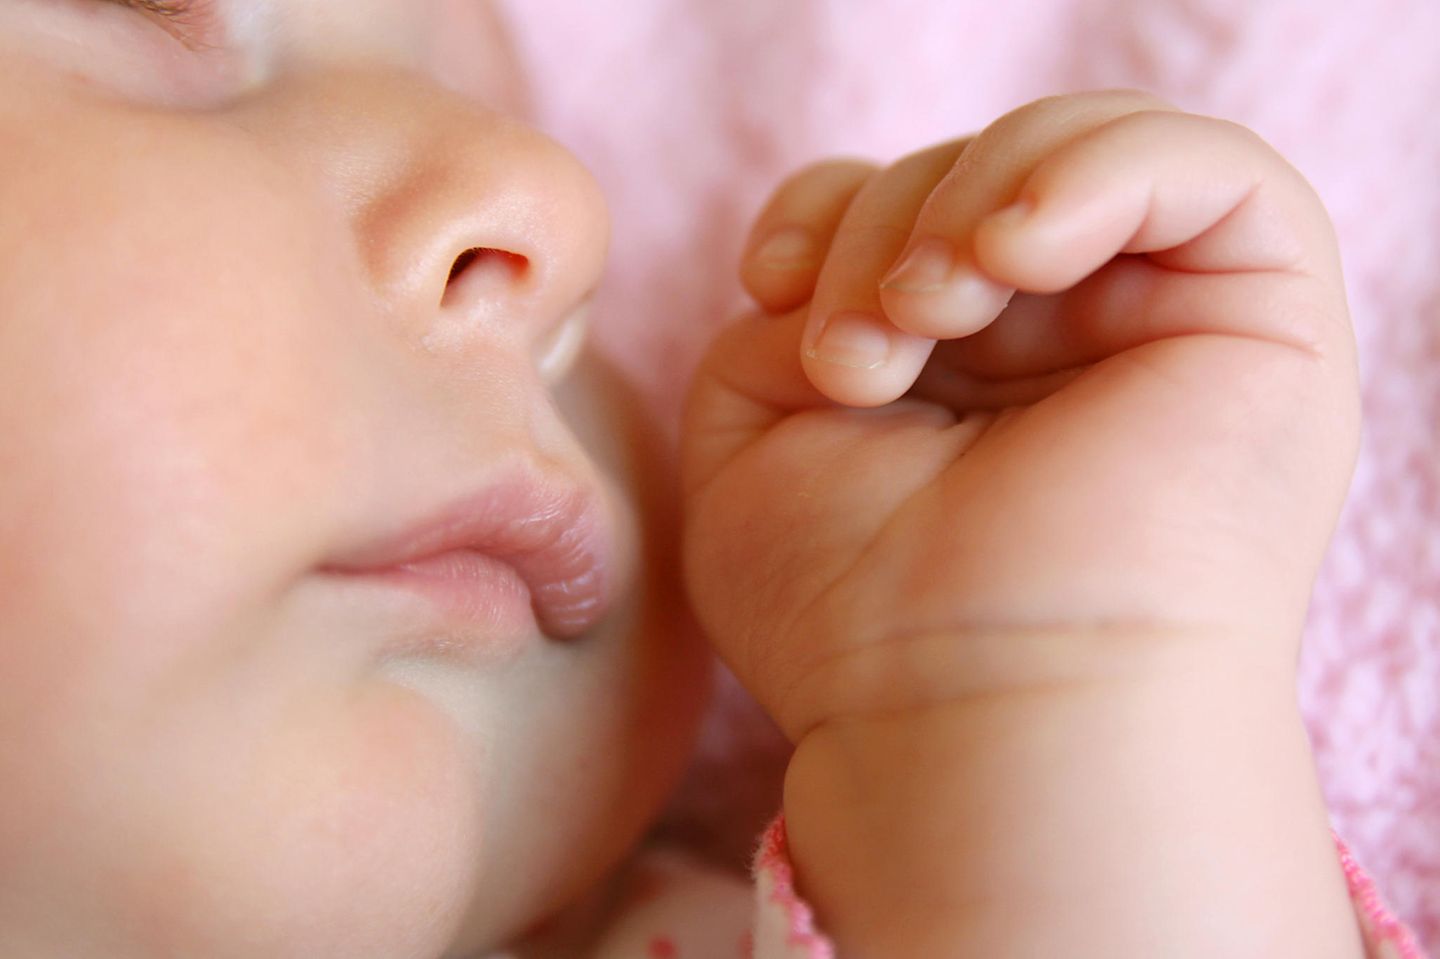 Nahaufnahme von Baby-Gesicht, bzw. von Nase und Hand